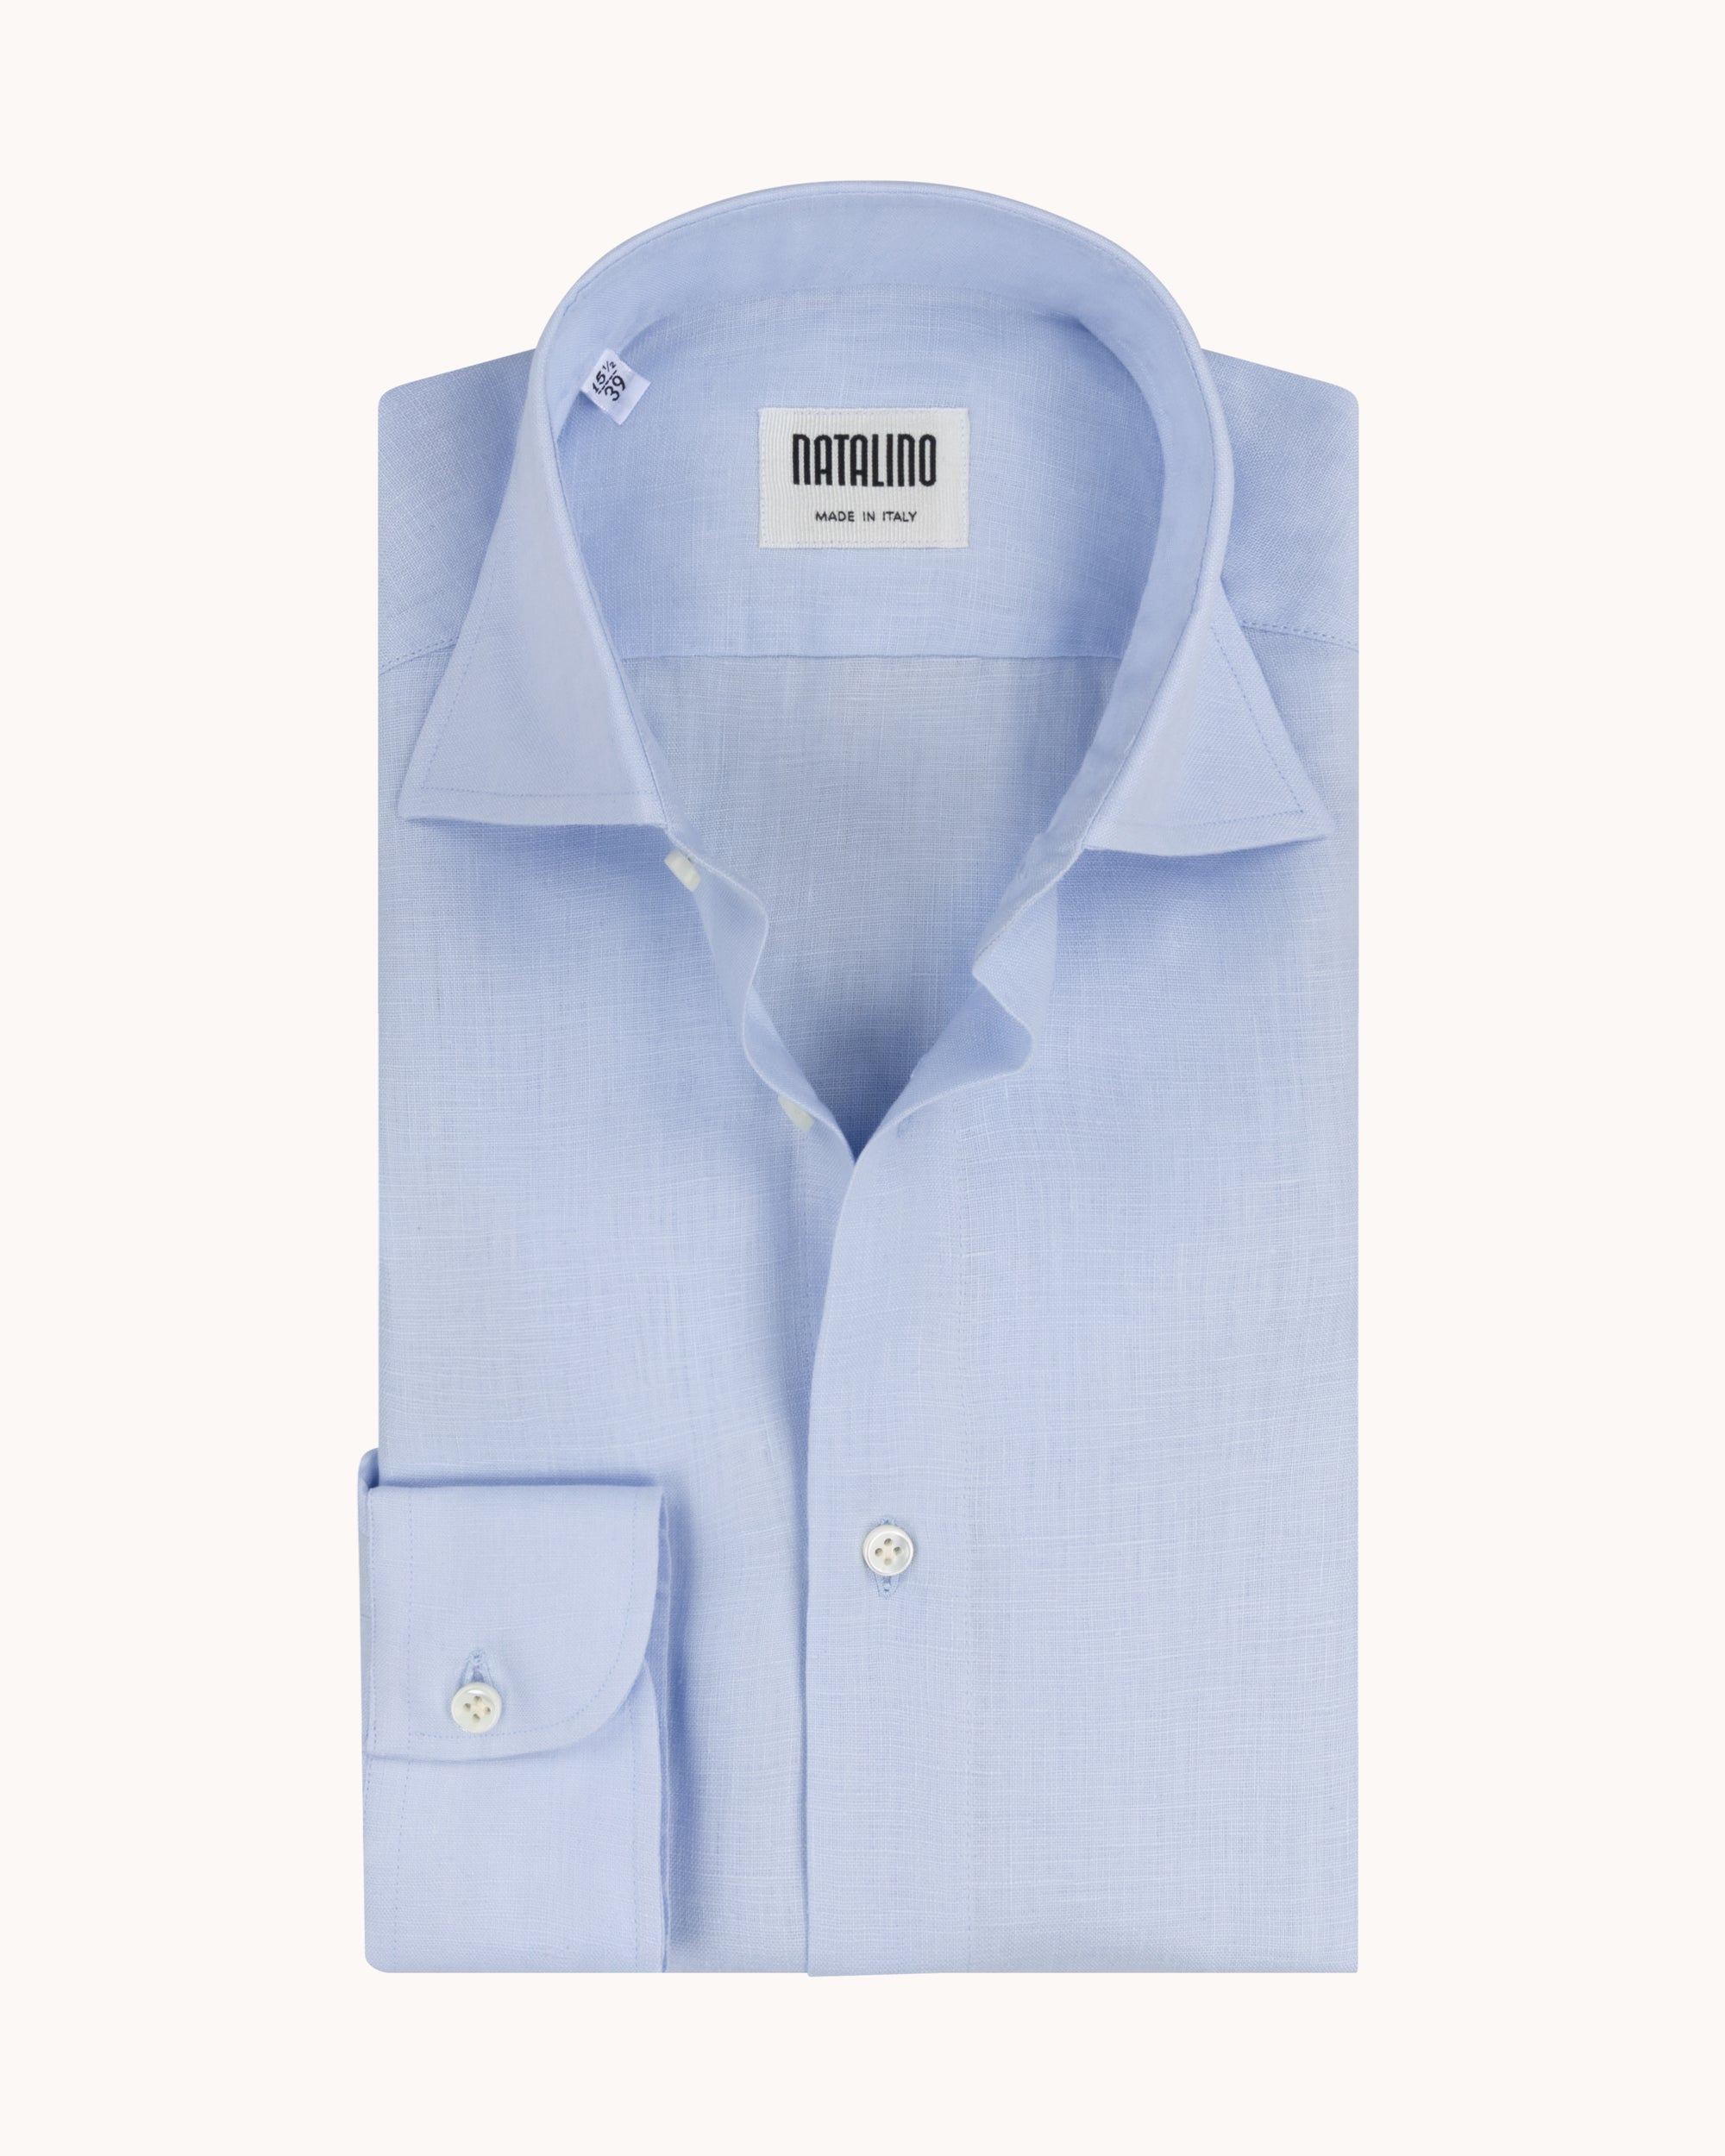 Spread Collar Shirt - Light Blue Linen